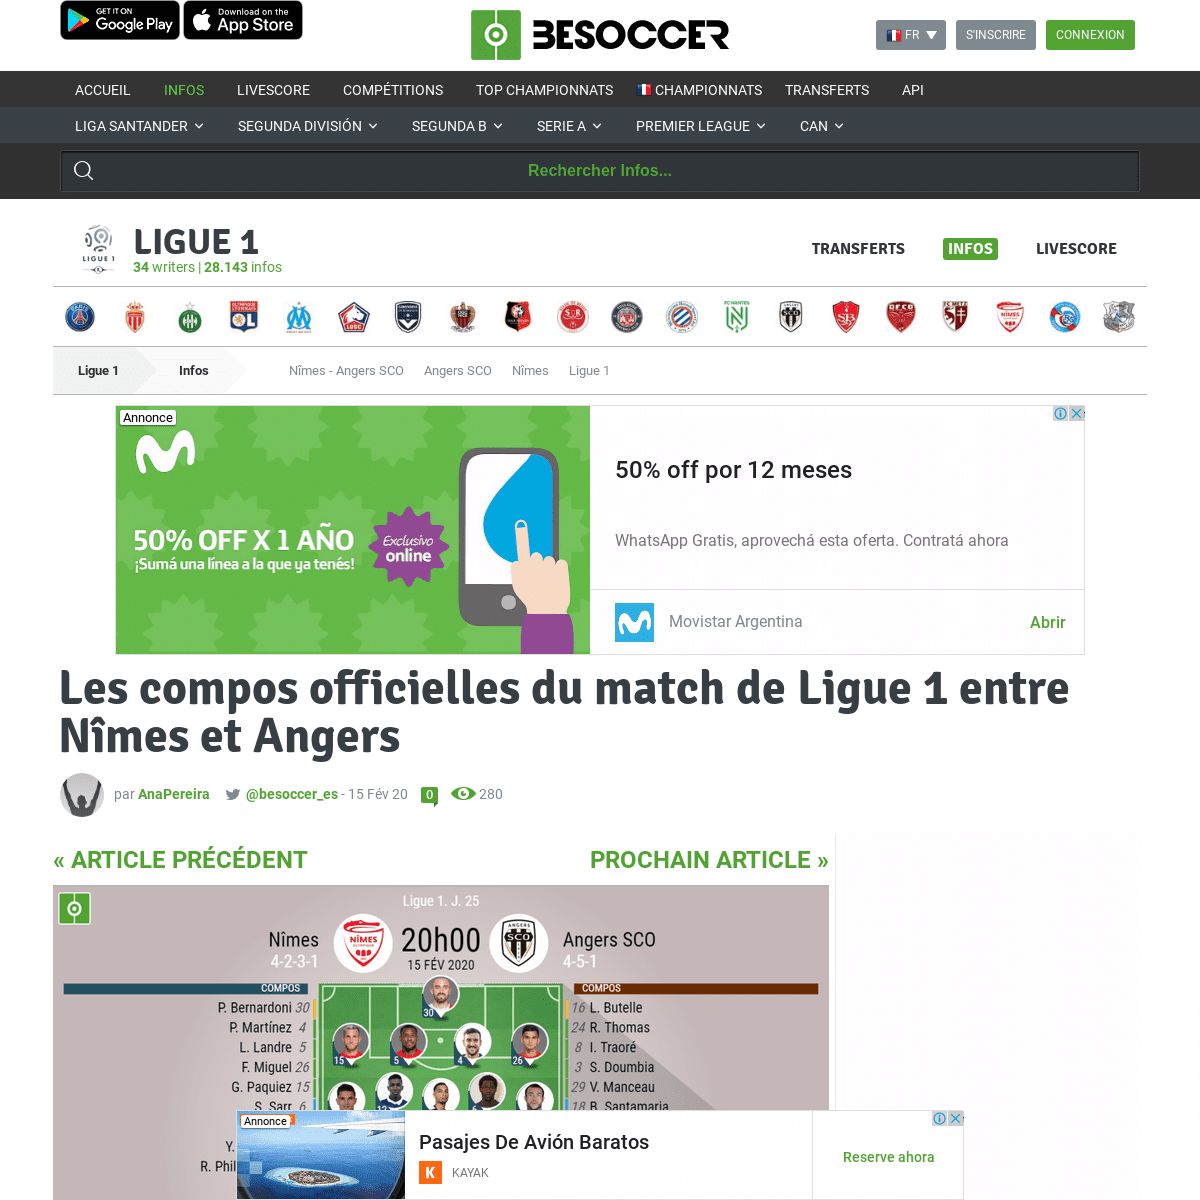 A complete backup of fr.besoccer.com/info/les-compos-officielles-du-match-de-ligue-1-entre-nimes-et-angers-794075